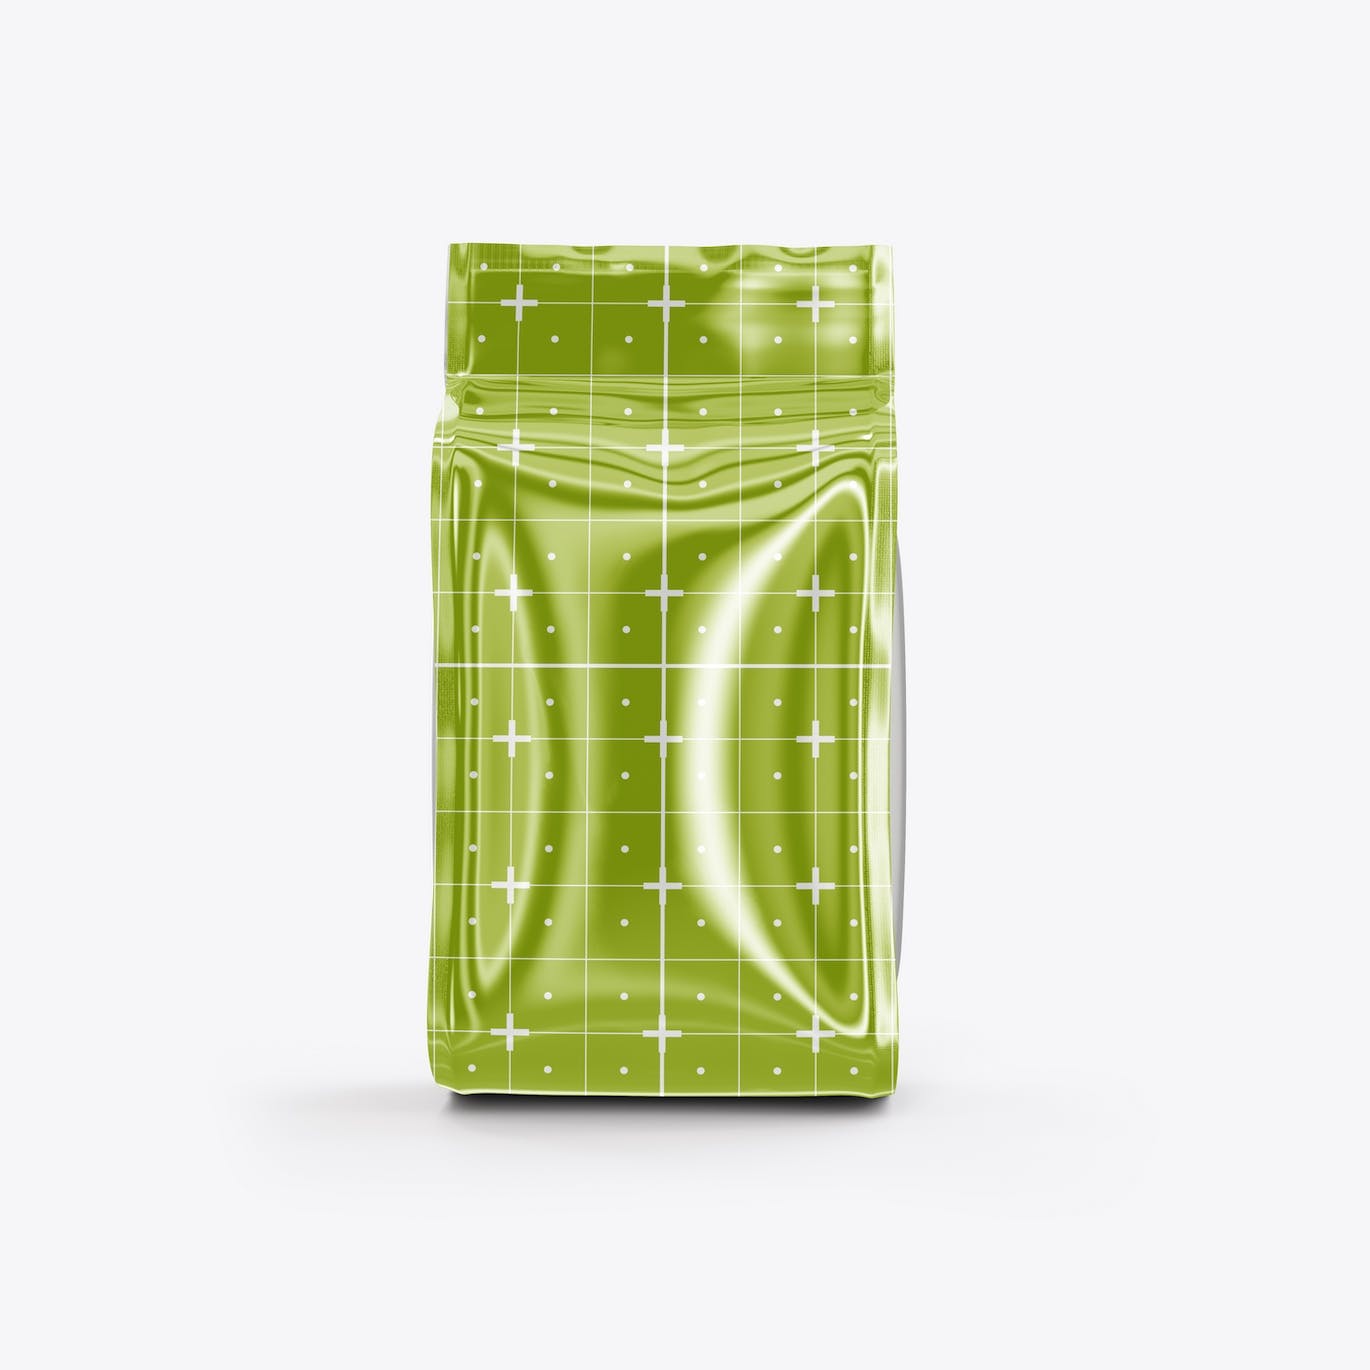 光滑的塑料纸咖啡袋包装设计样机图 Set Glossy Plastic Paper Coffee Bag Mockup 样机素材 第5张